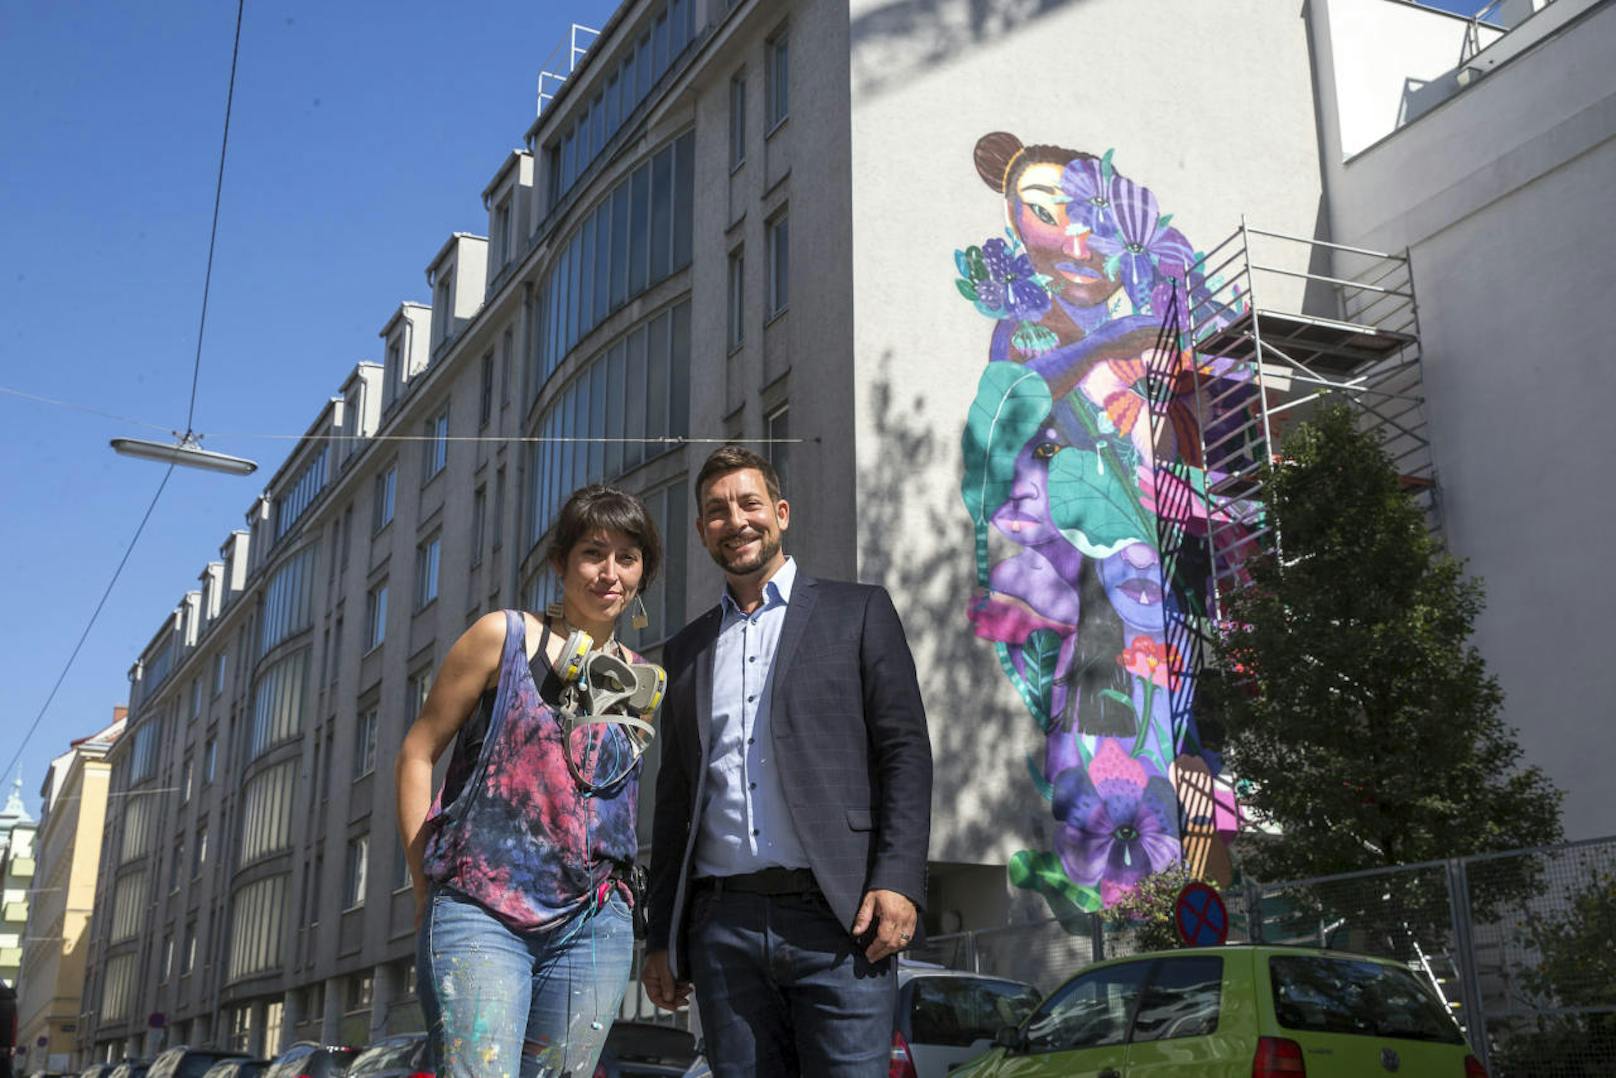 Graffiti-Künstlerin Anis mit Mariahilfs Bezirkschef Markus Rumelhart (SPÖ) vor der Lotusblumen-Feuermauer in der Windmühlgasse.